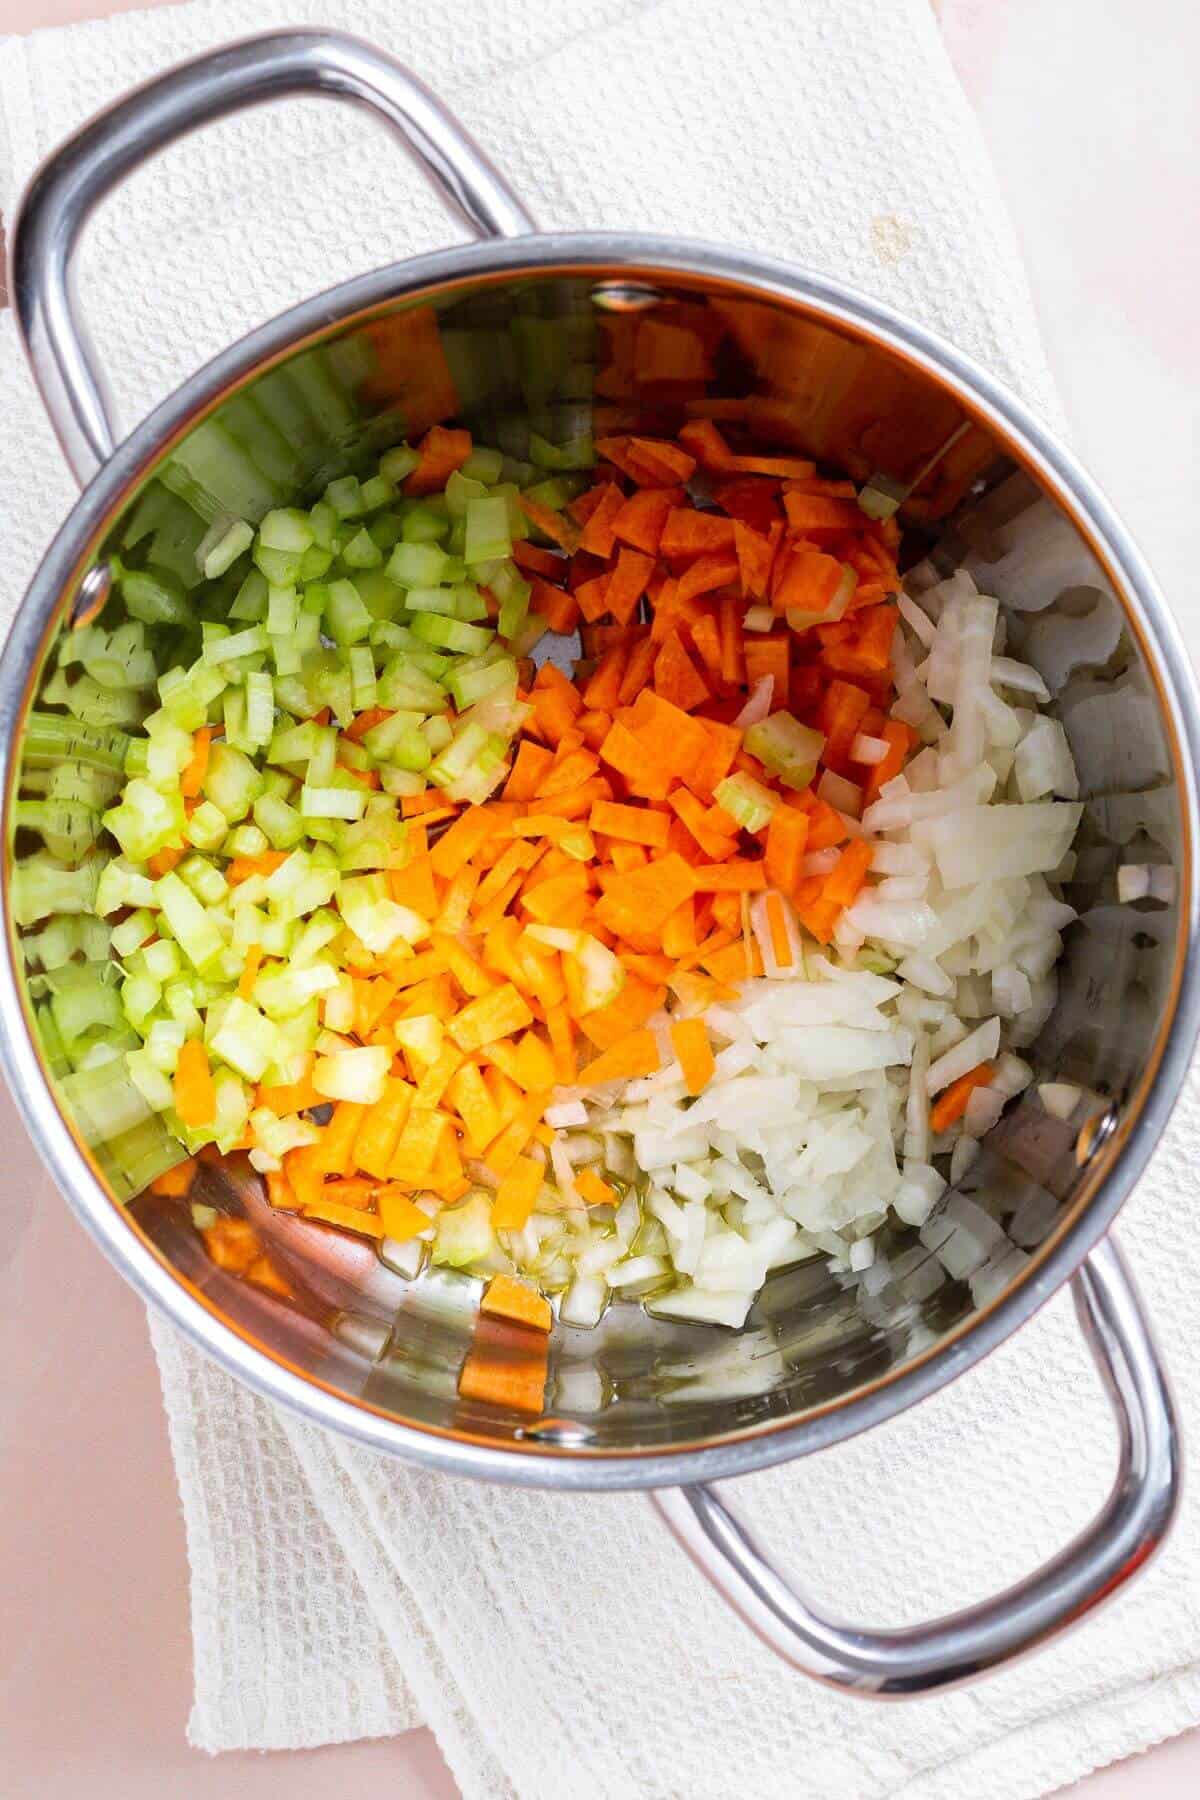 Vegetables in soup pot.